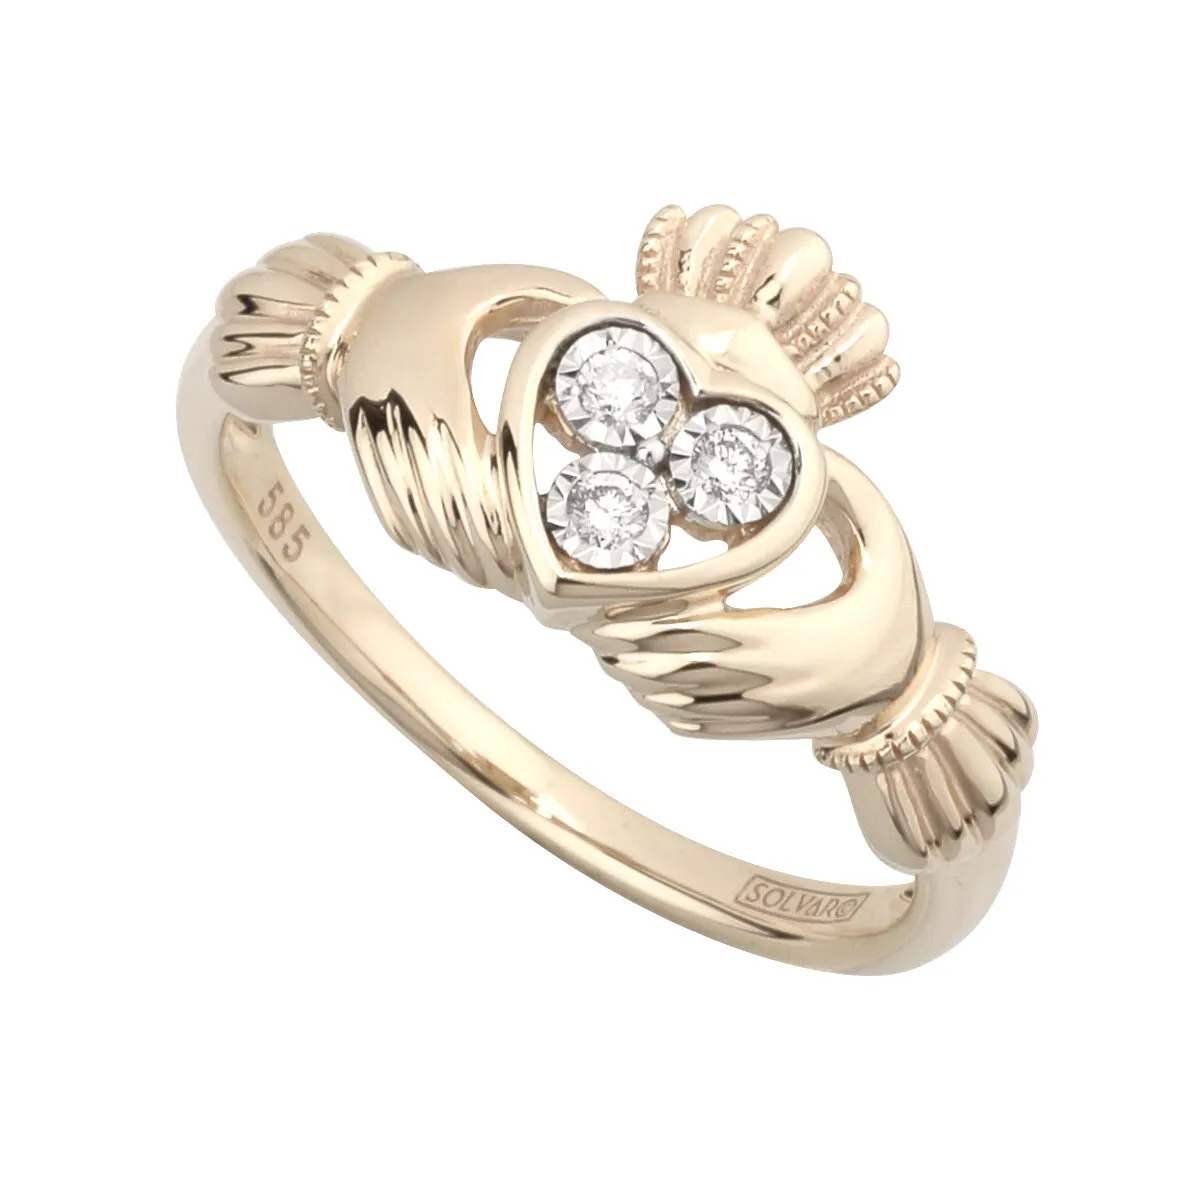 Charming 14k Gold Diamond Irish Claddagh Ring...